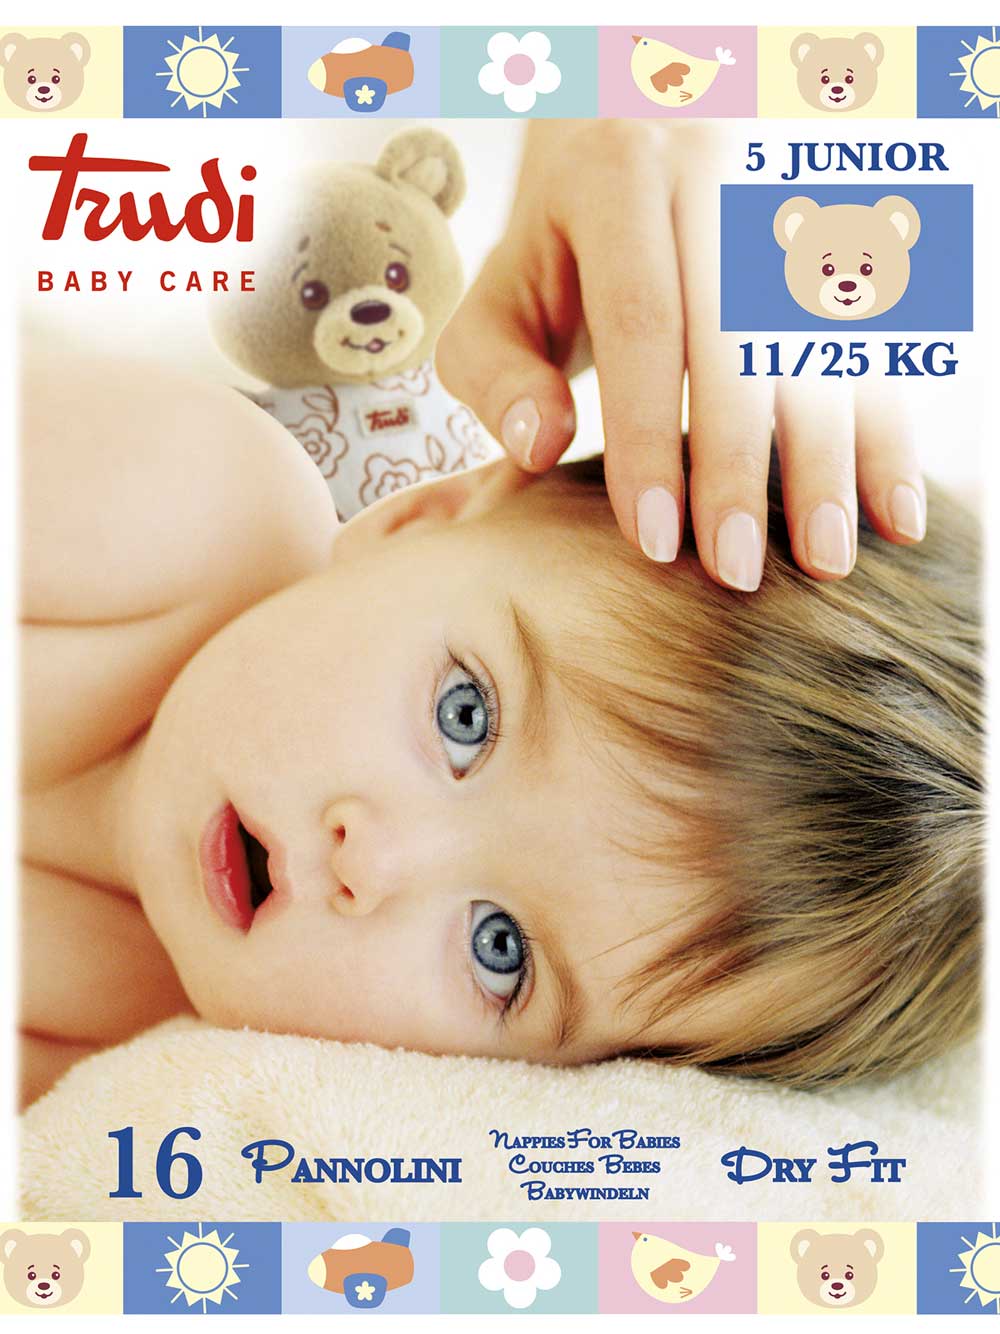 Image of Pannolini Dry Fit Taglia Junior 11/25kg Trudi Baby Care 16 Pannolini